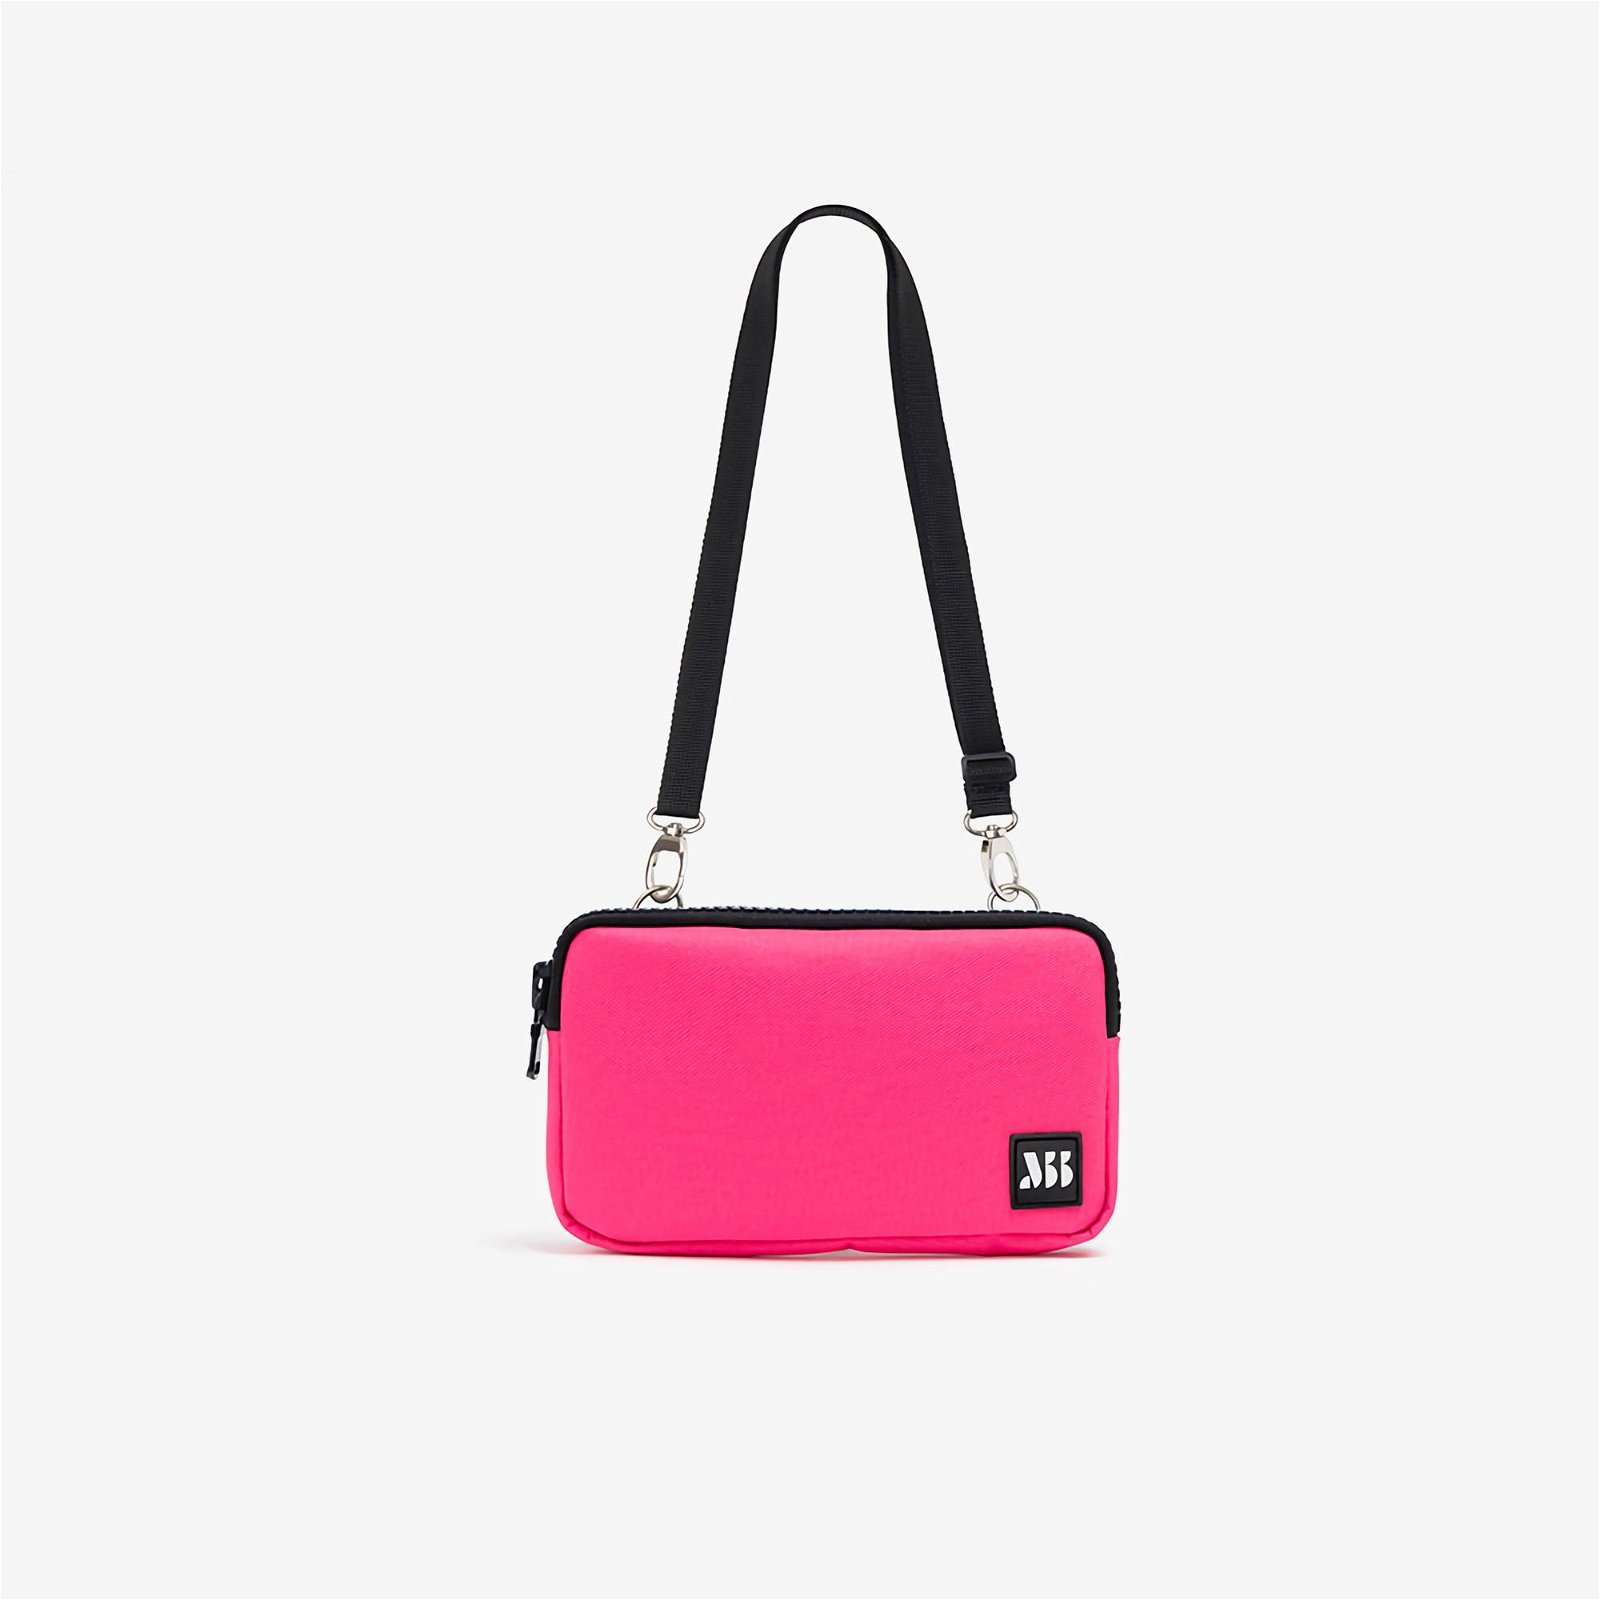 MuniBum Bag Neon Pink Phone Bag